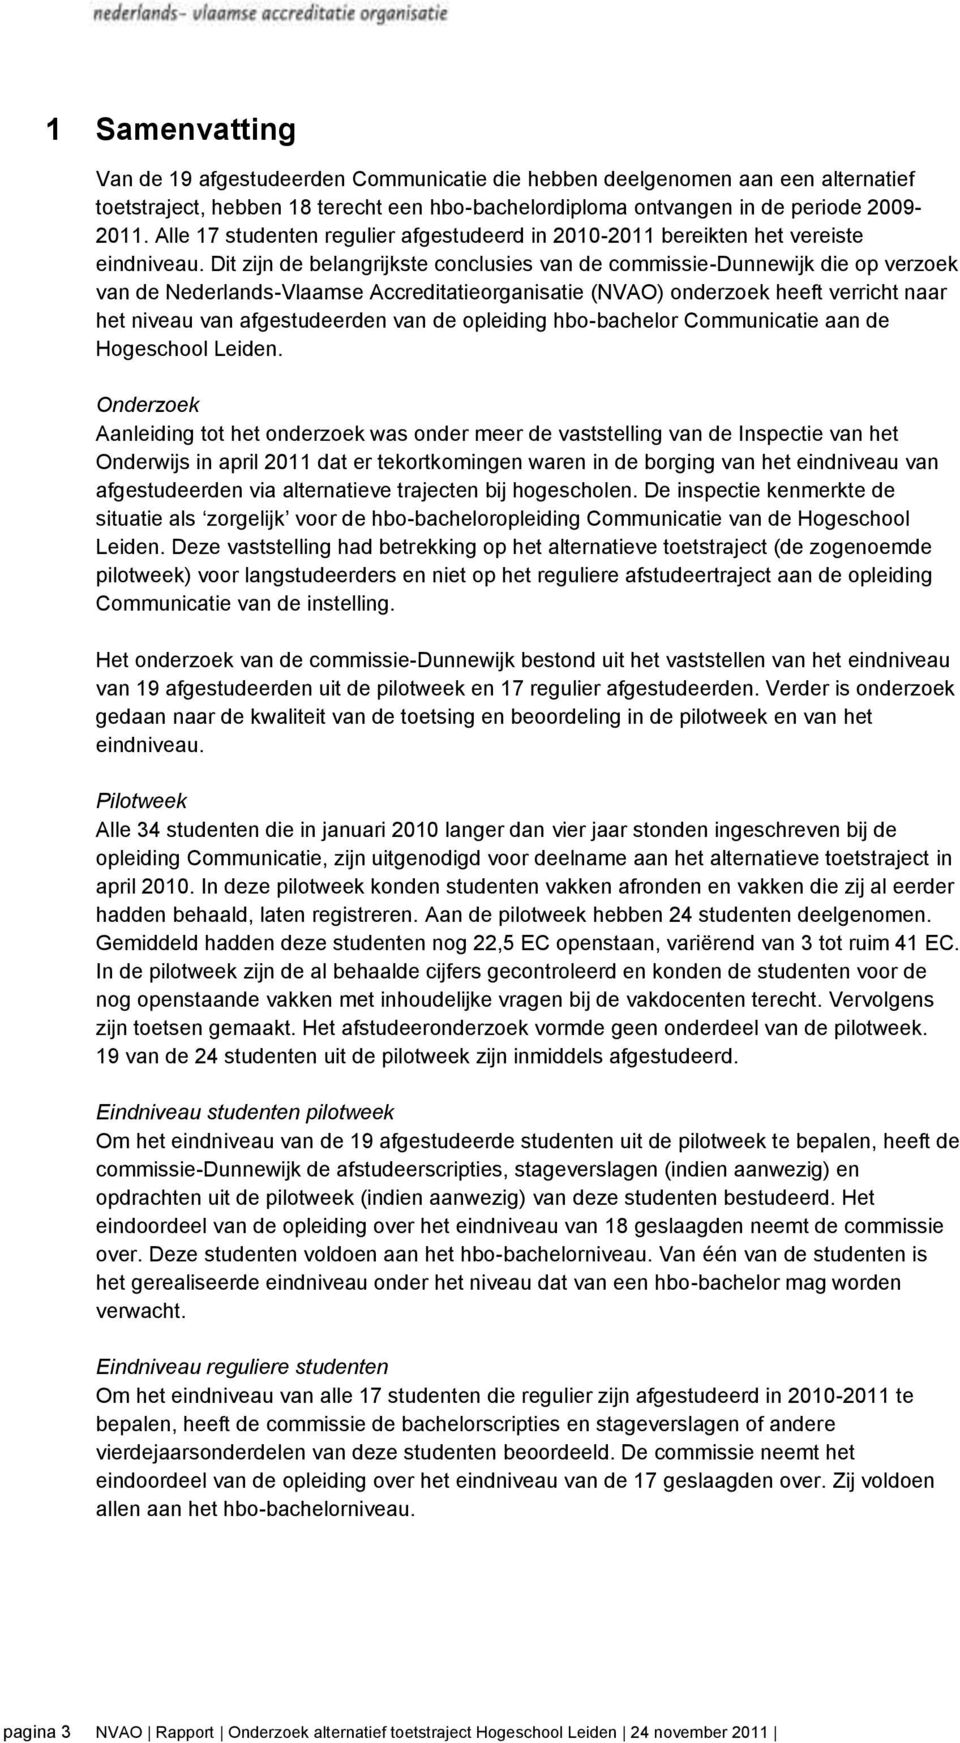 Dit zijn de belangrijkste conclusies van de commissie-dunnewijk die op verzoek van de Nederlands-Vlaamse Accreditatieorganisatie (NVAO) onderzoek heeft verricht naar het niveau van afgestudeerden van